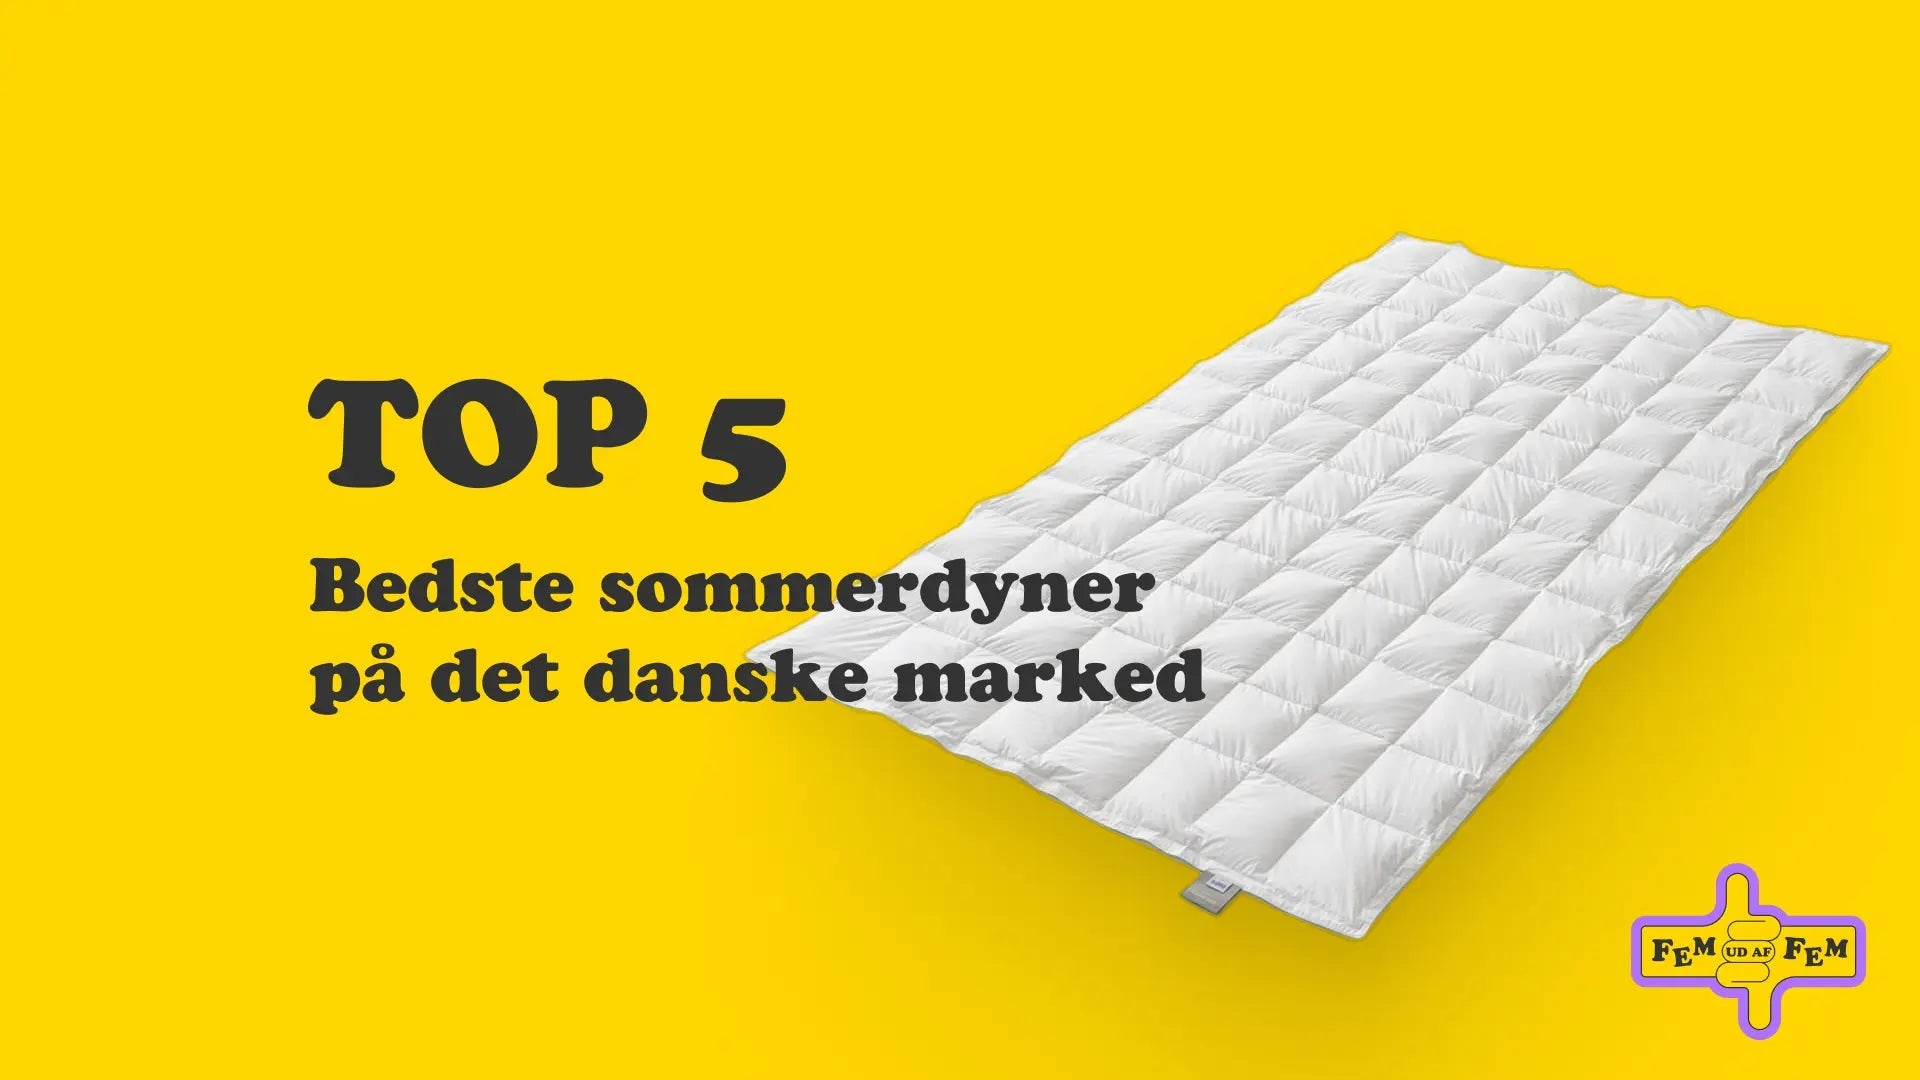 Top 5: Bedste ommerdyner på det danske marked